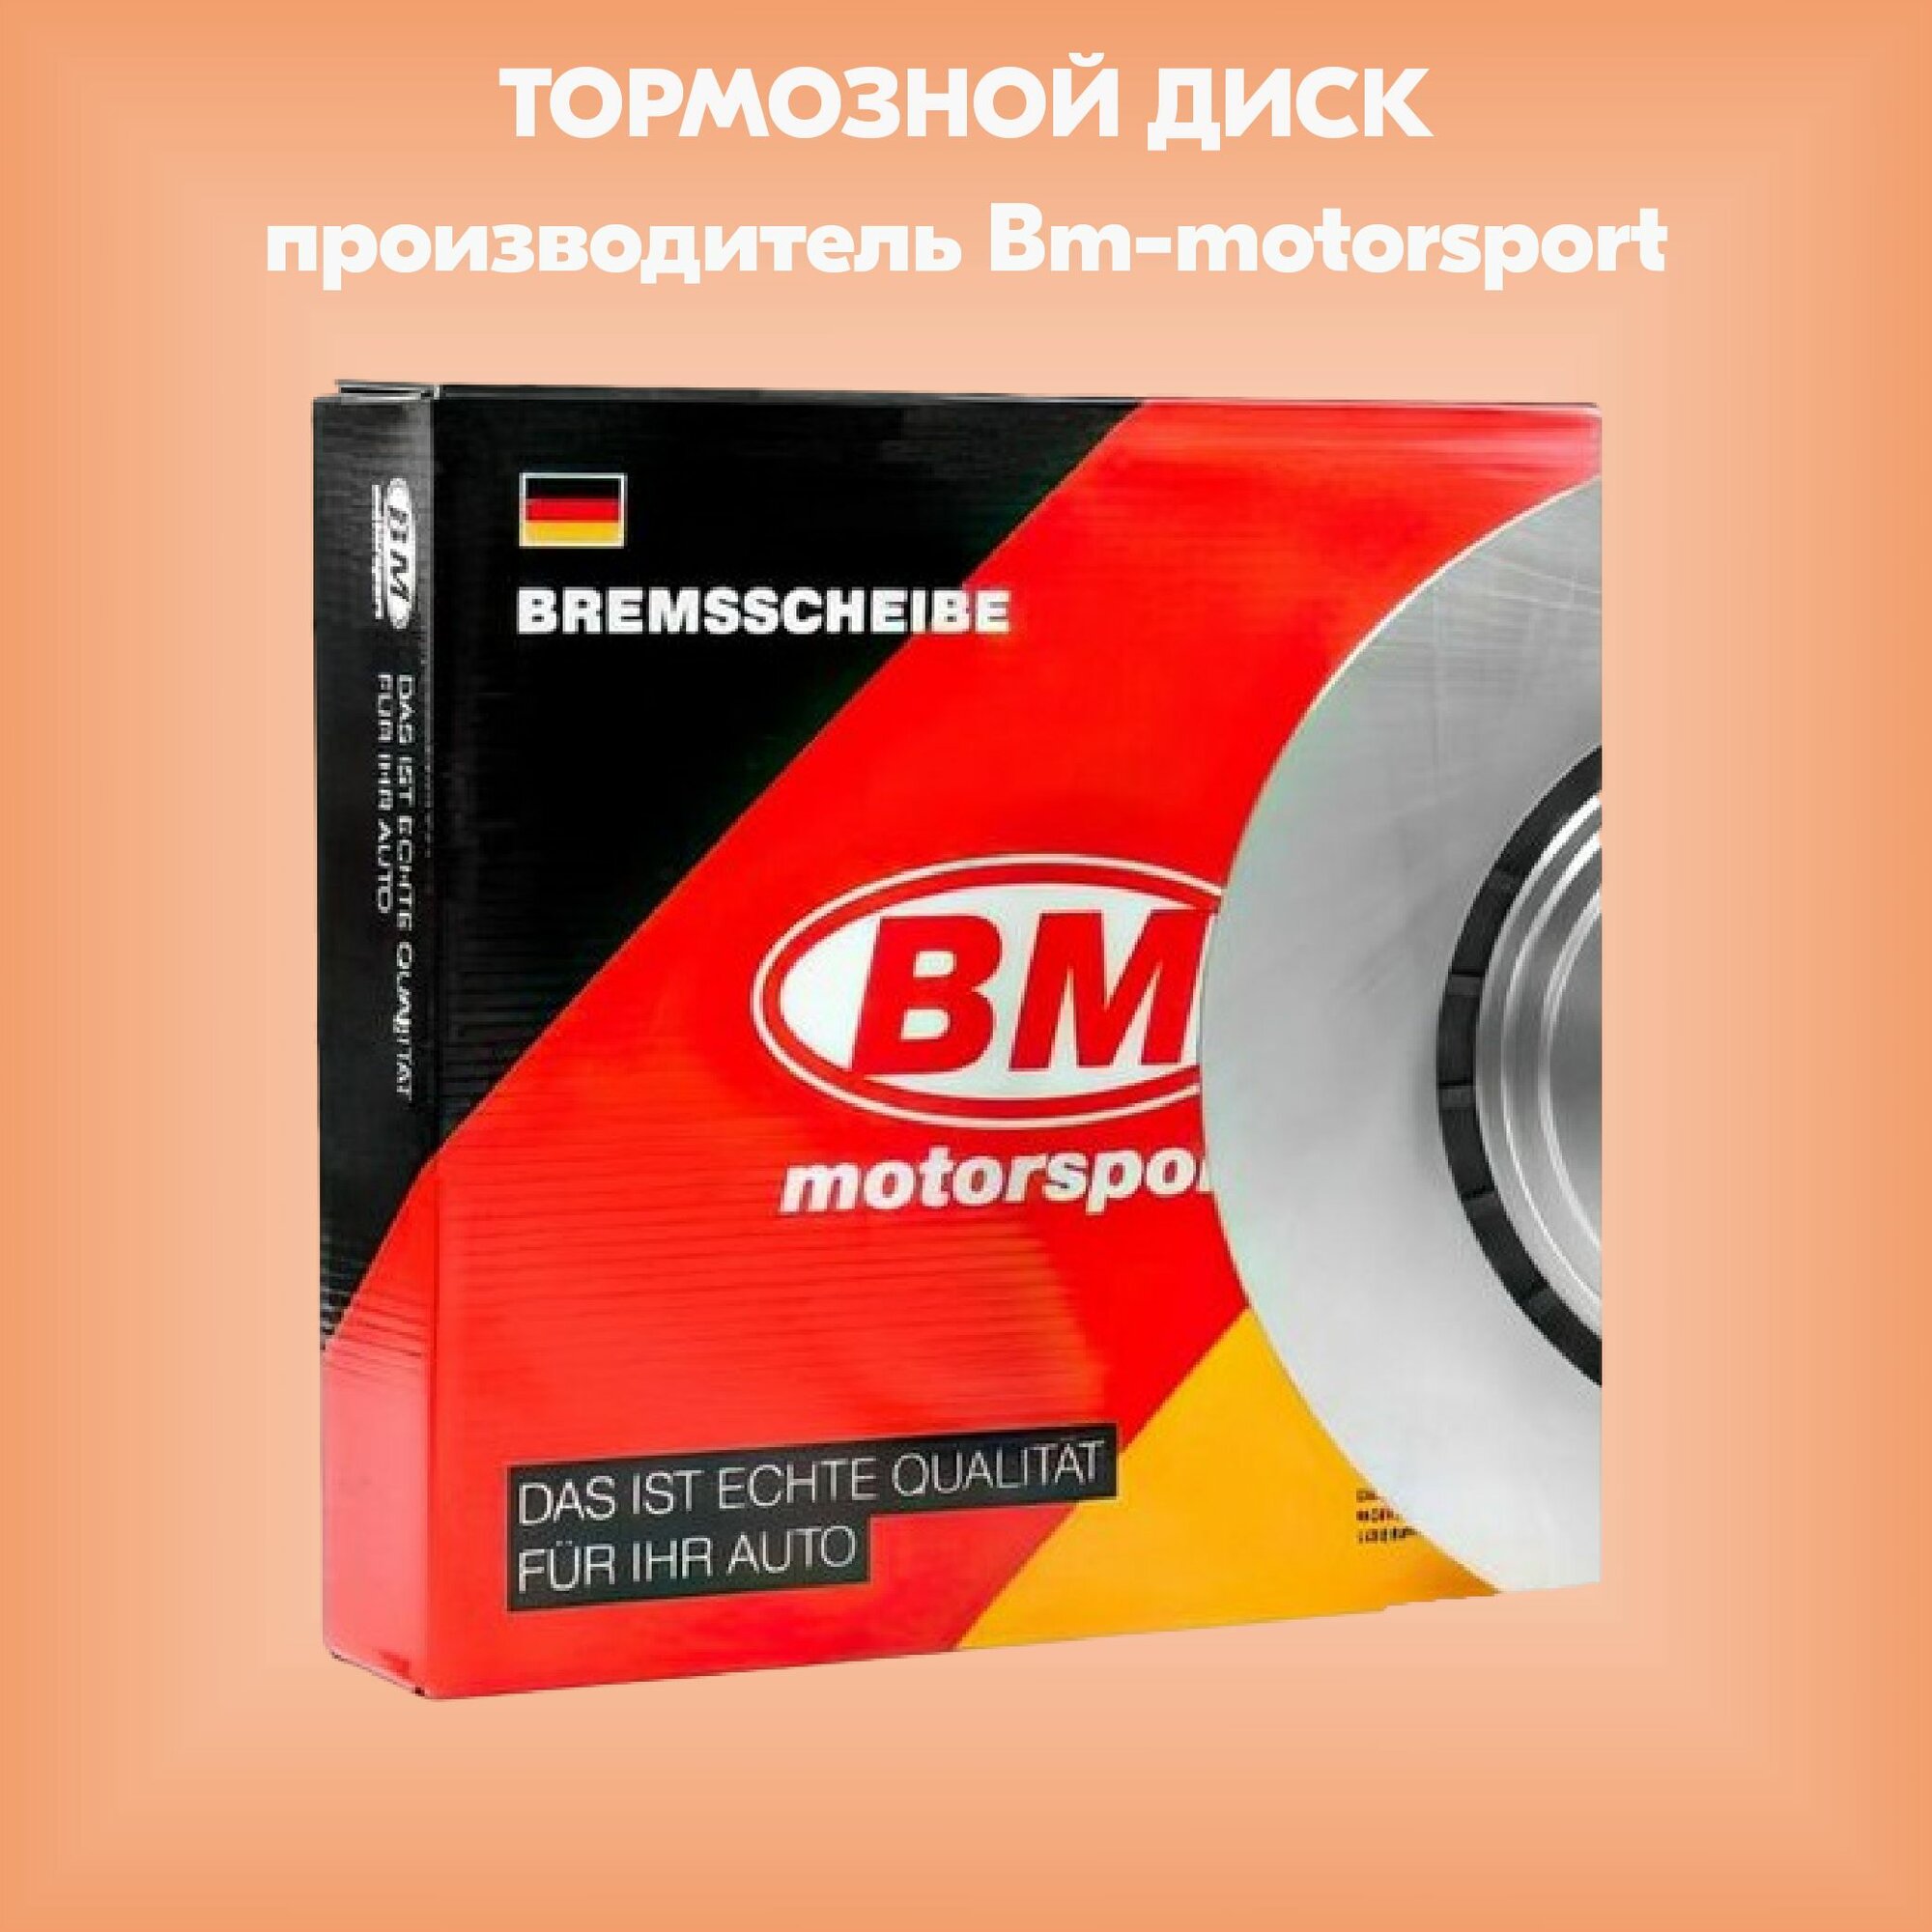 Диск тормозной (производитель Bm-motorsport артикул BD5333)